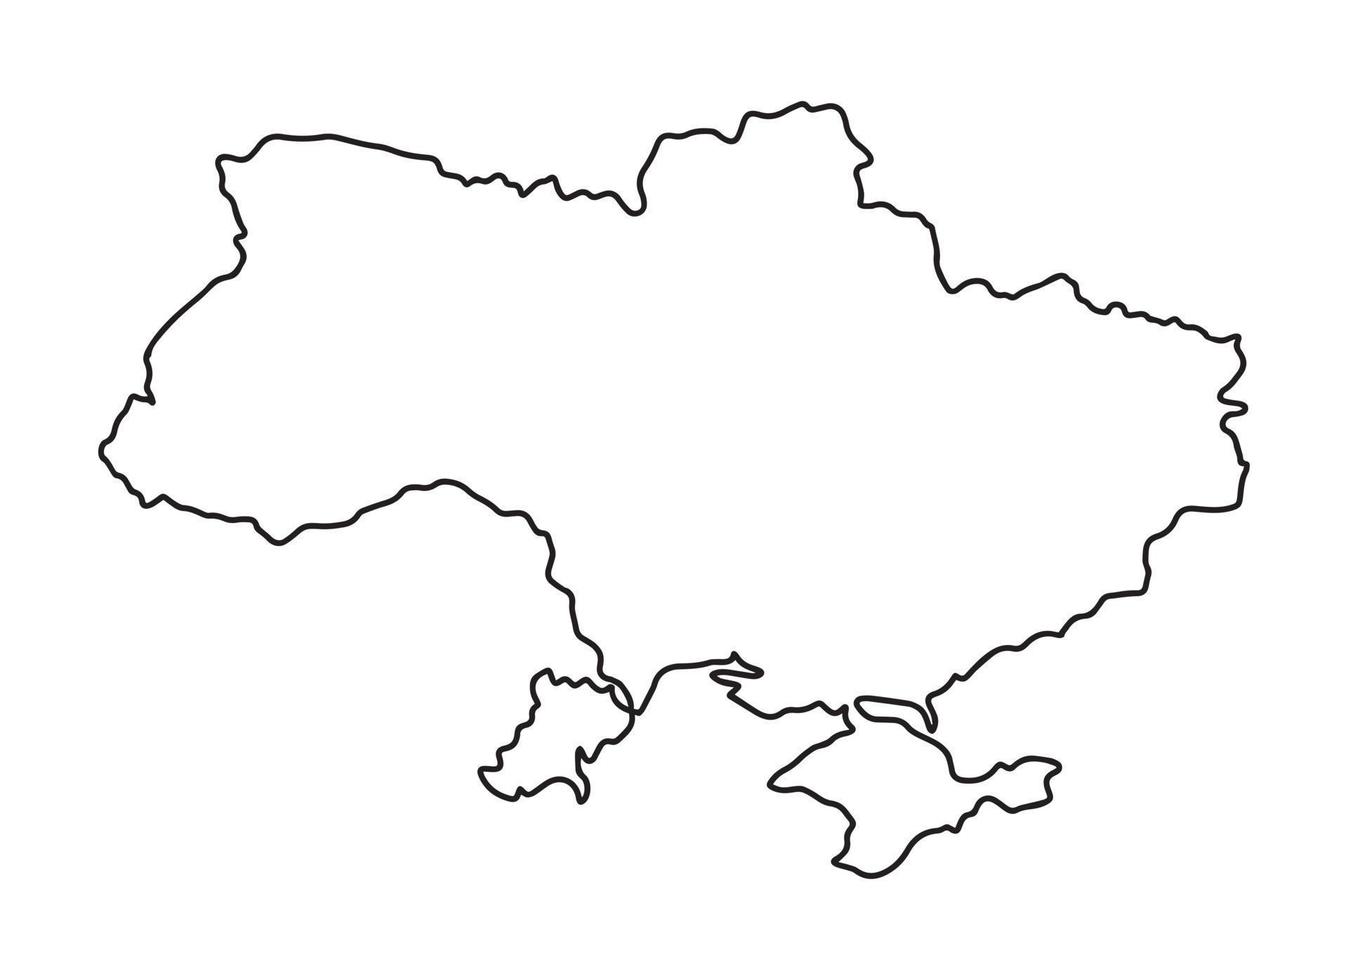 kaart van Oekraïne - eenvoudige hand getrokken schets stijl zwarte lijn overzicht contour kaart. vectorillustratie geïsoleerd op wit. Oekraïense grens silhouet tekening. vector